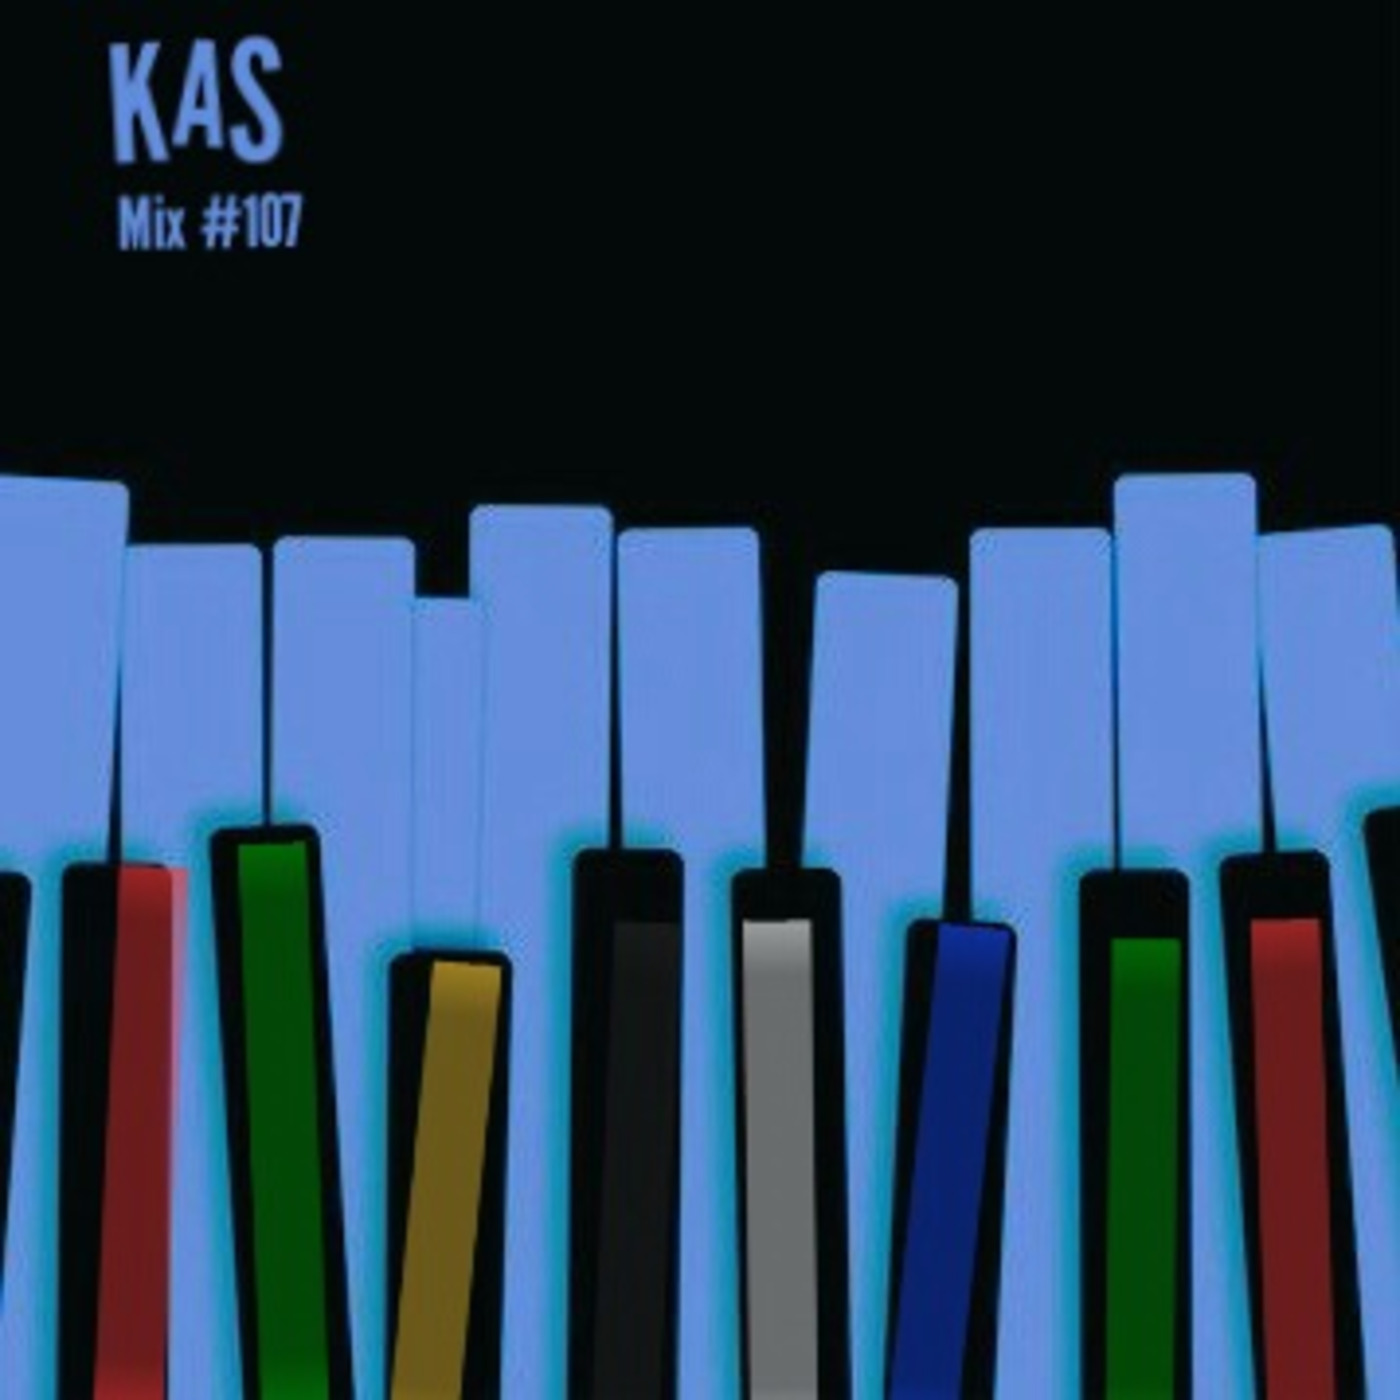 Episode 1: KaS - Podcast # 107